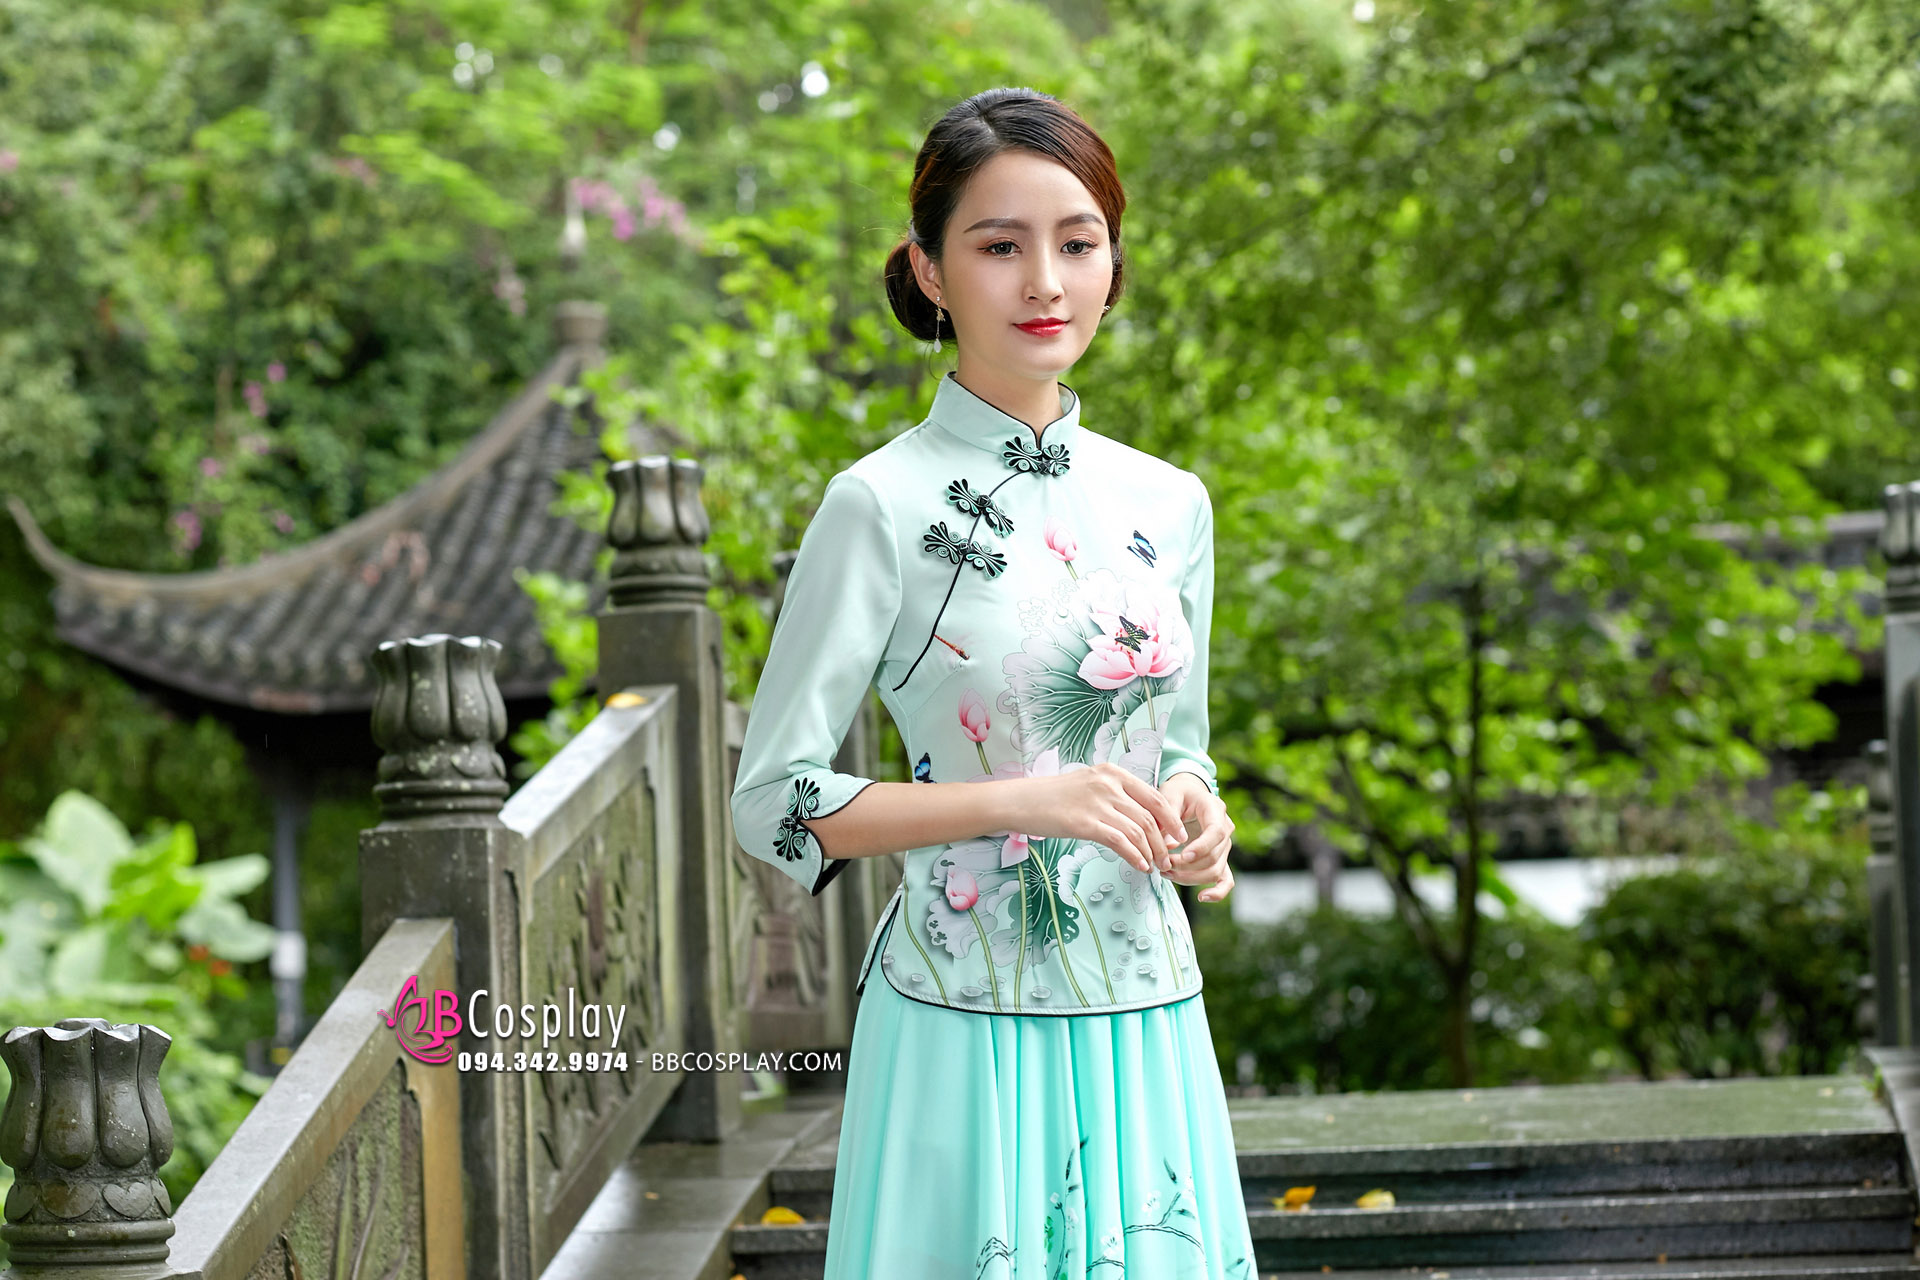 Cách mặc sườn xám chuẩn đẹp như cô gái Trung Hoa